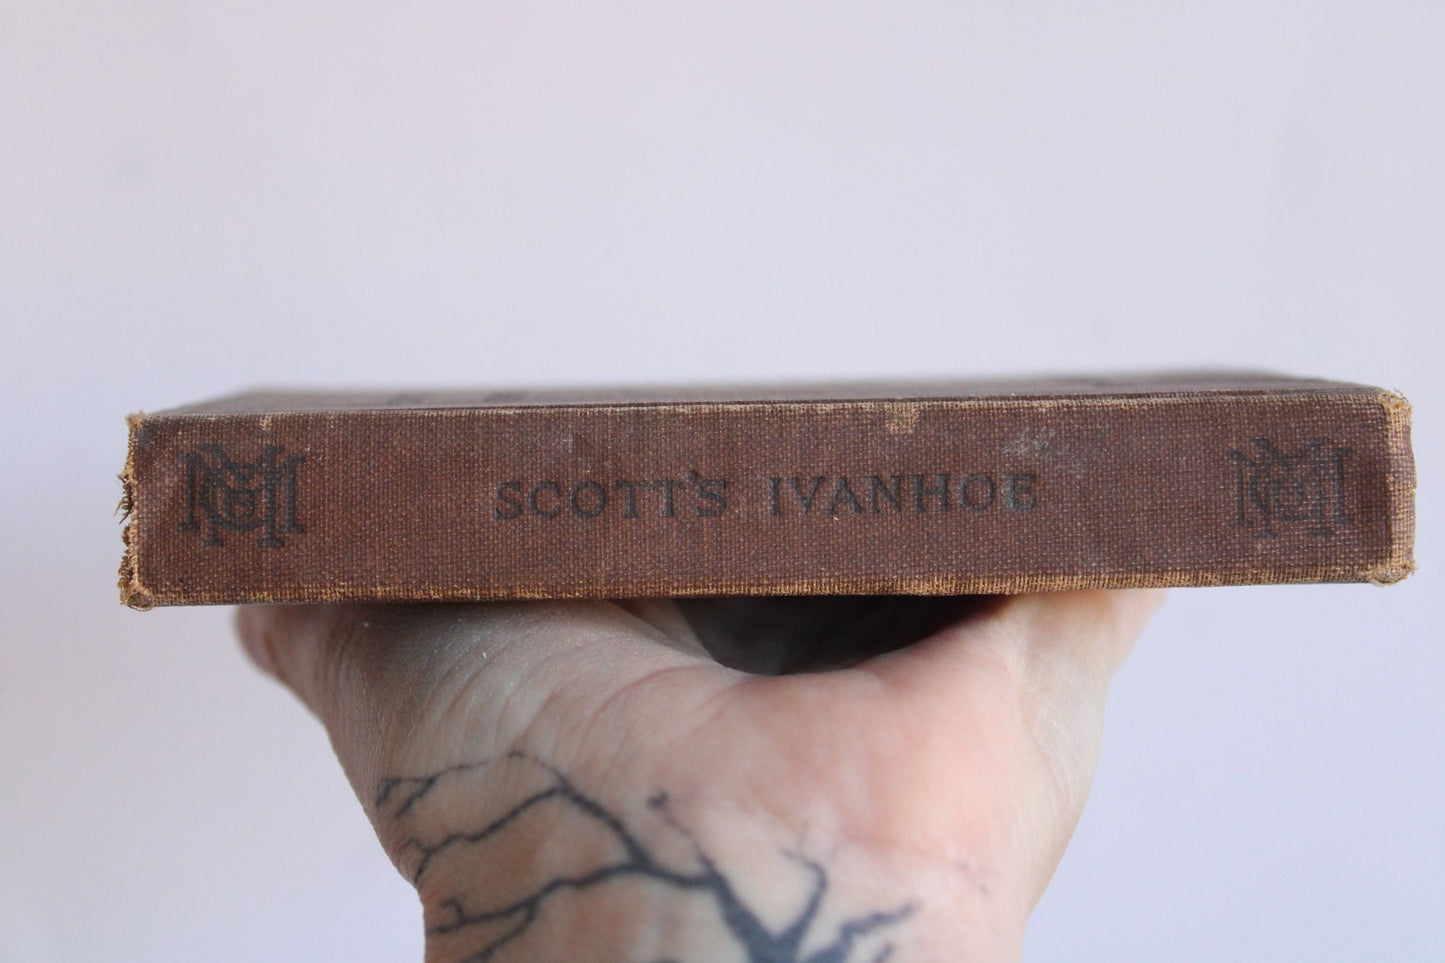 Vintage 1910s Book, "Ivanhoe" Sir Walter Scott